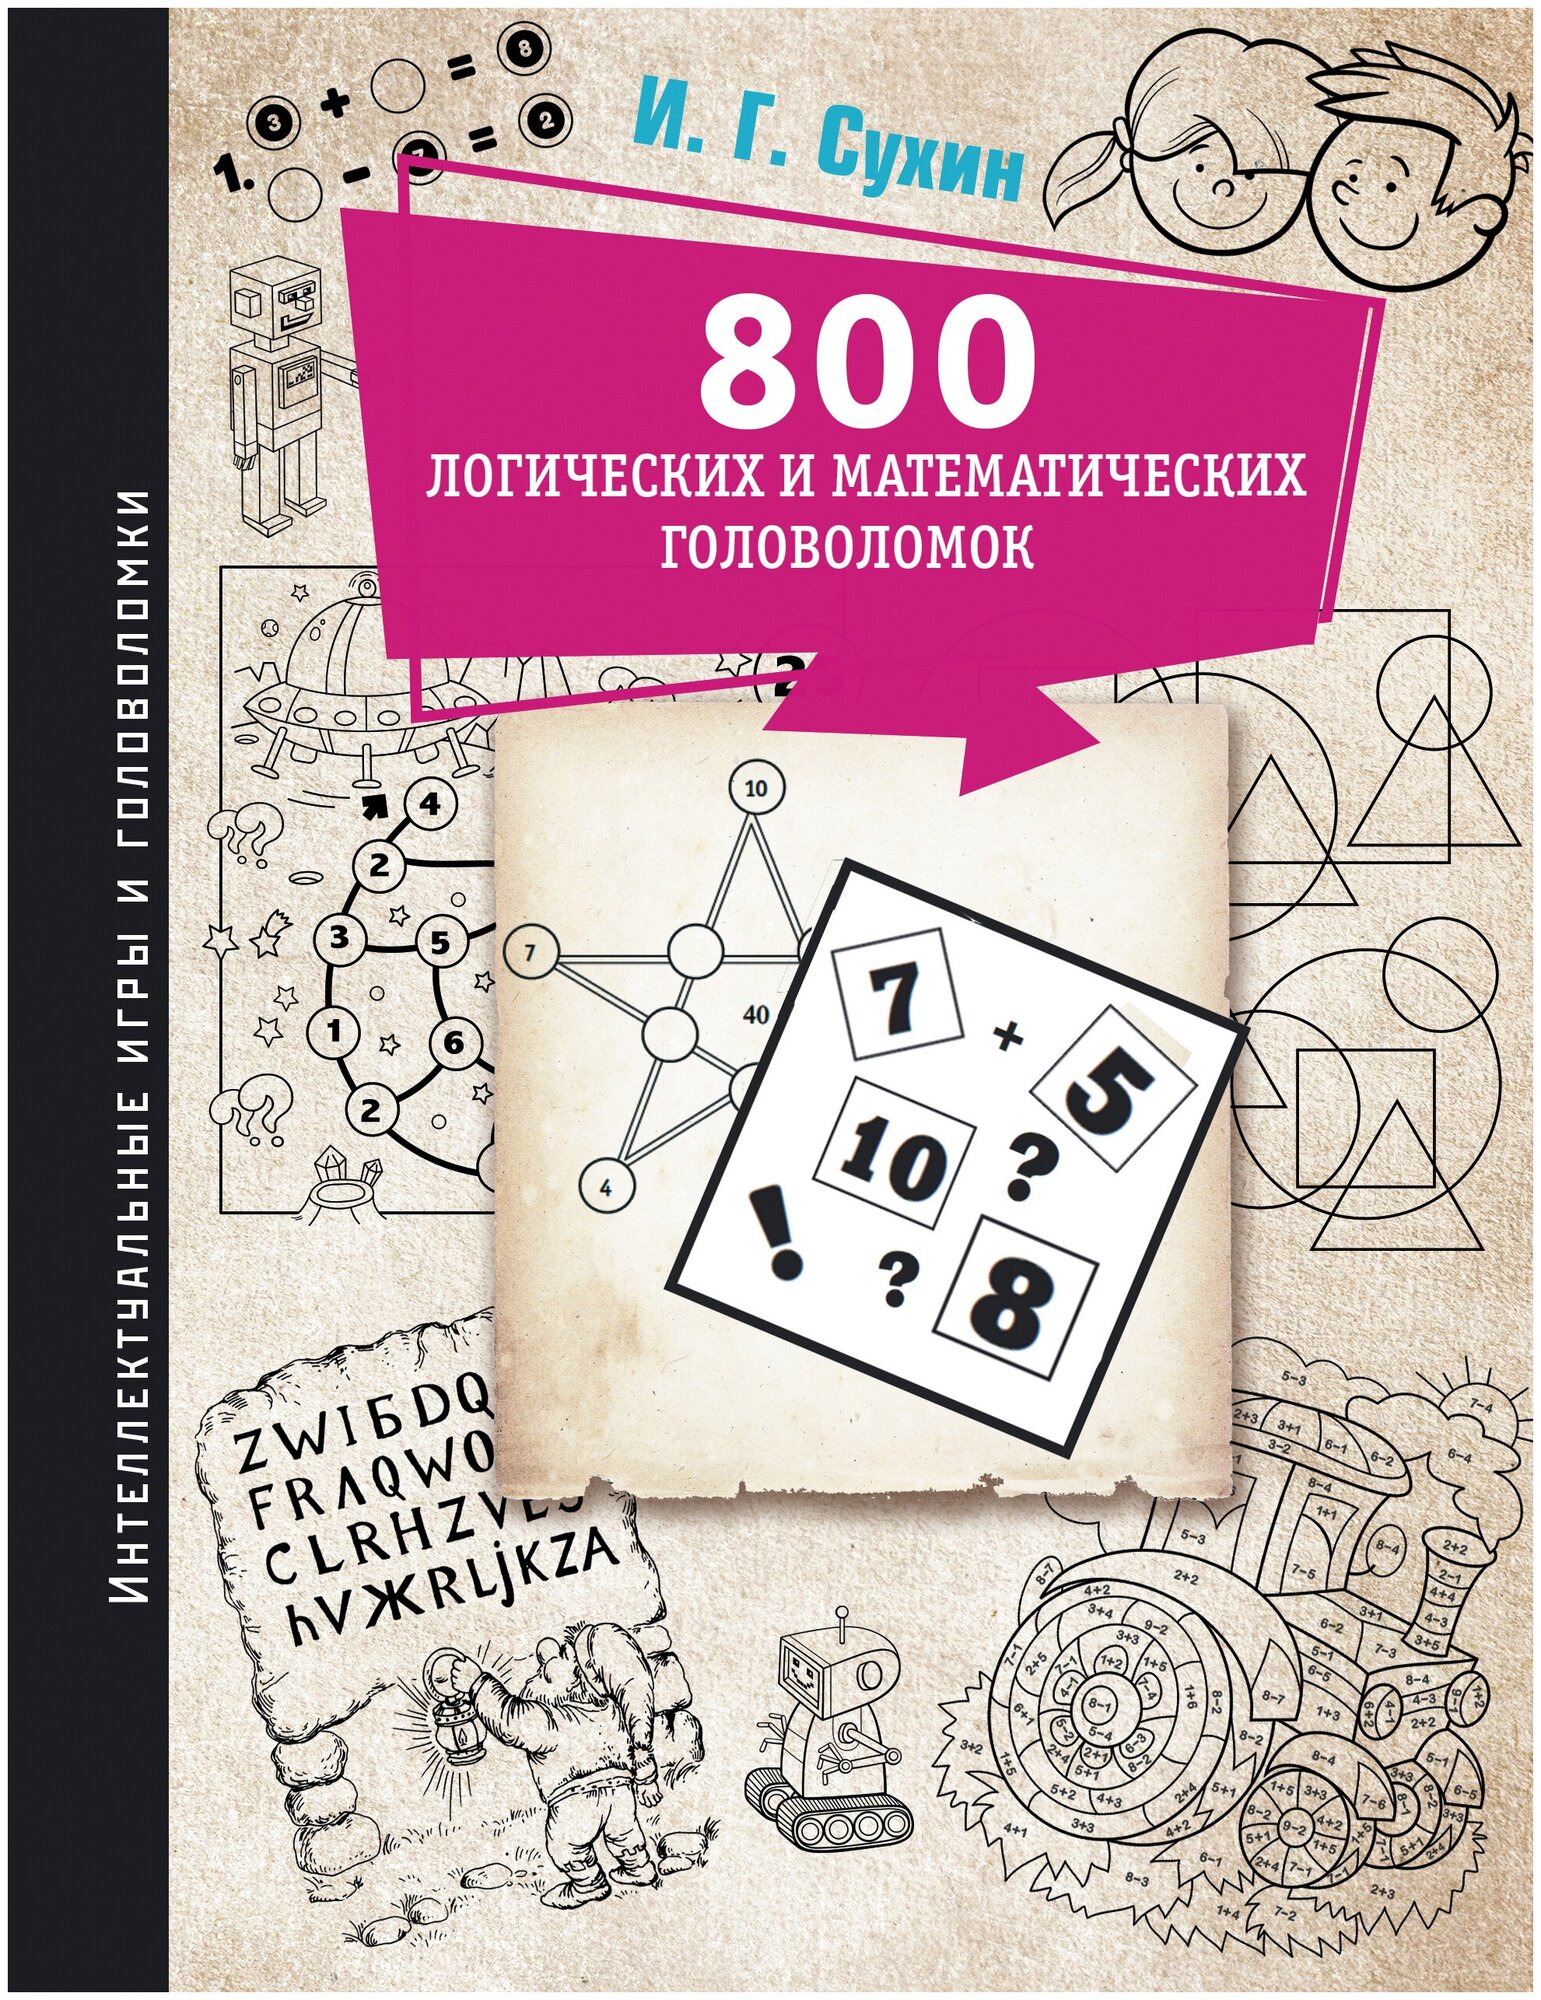 800 логических и математических головоломок - фото №1